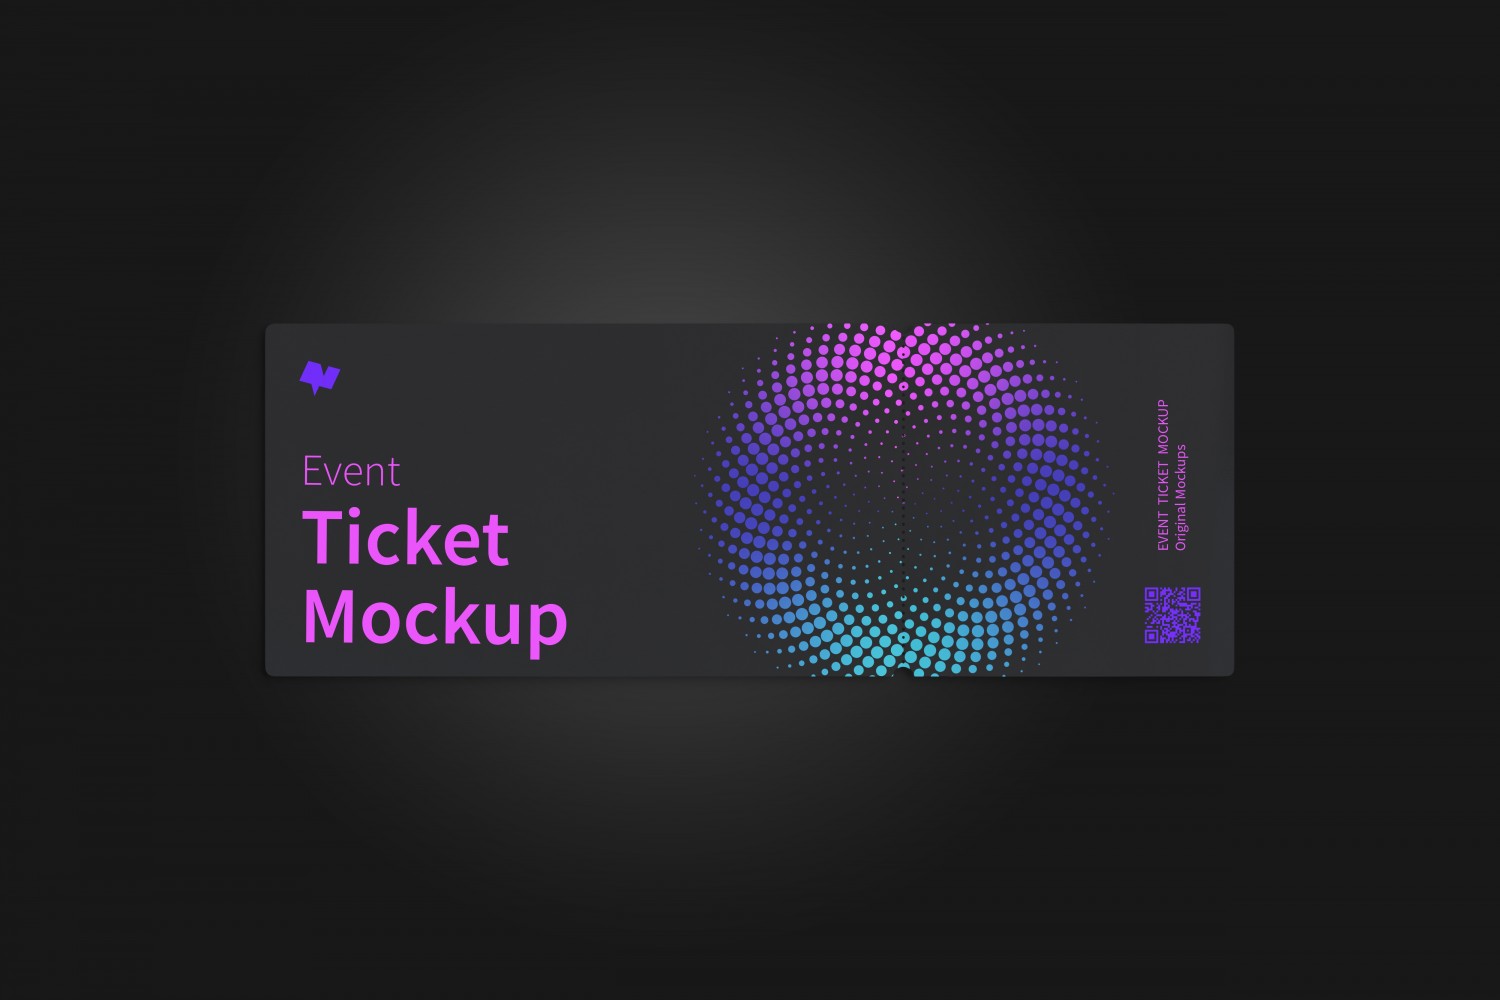 门票入场券设计单张平铺顶视图样机第一素材精选模板 Event ticket mockup, top view插图(3)